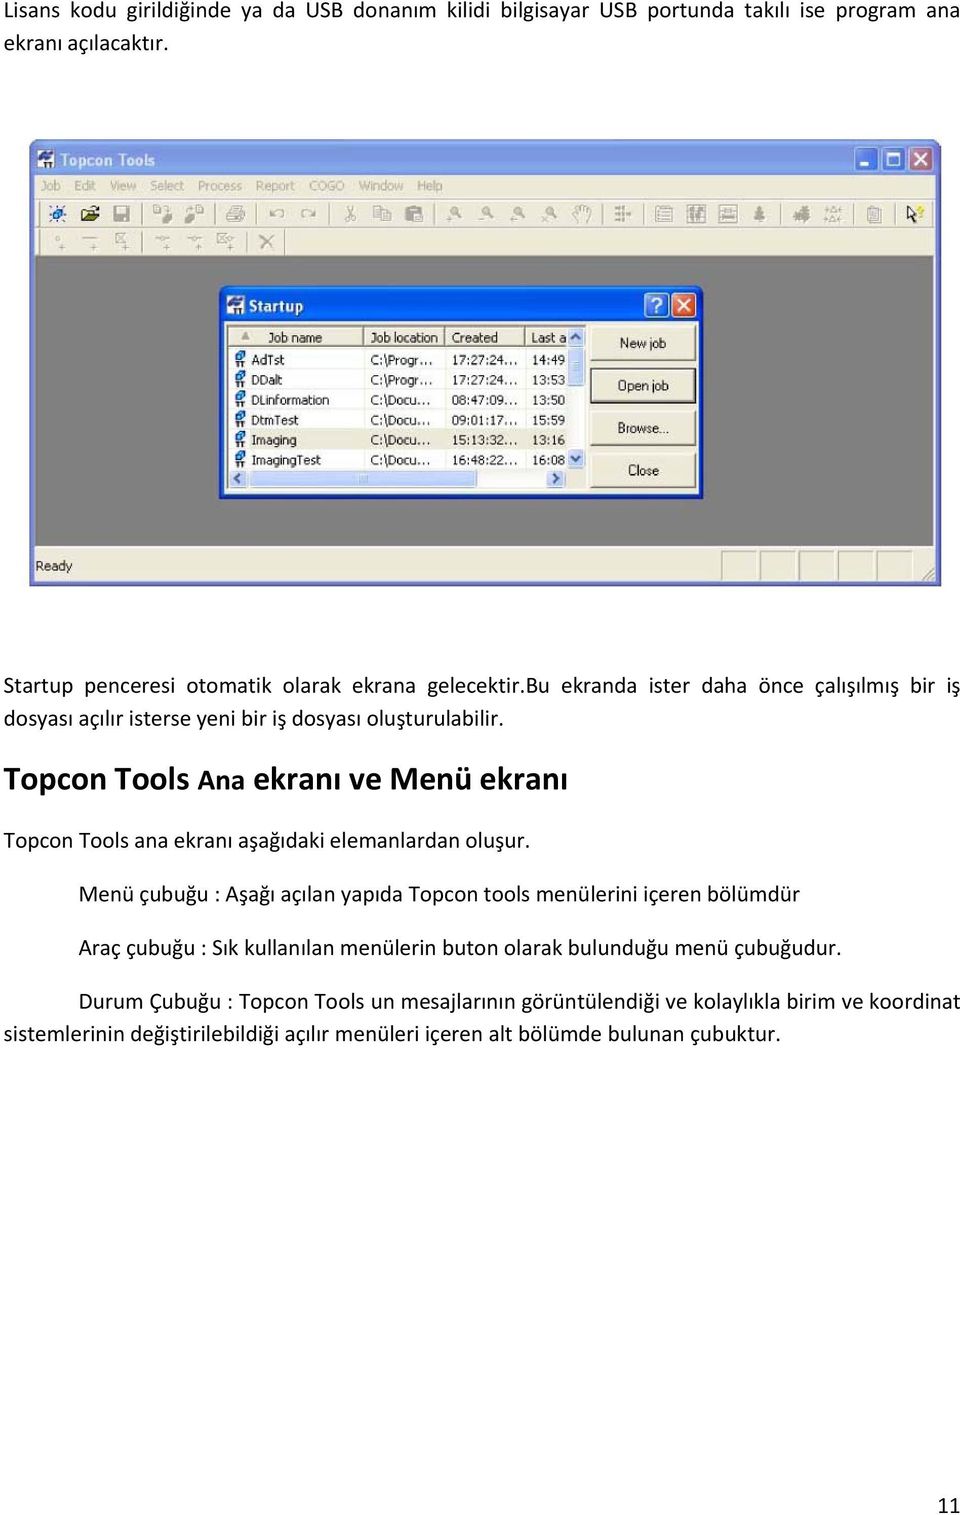 Topcon Tools Ana ekranı ve Menü ekranı Topcon Tools ana ekranı aşağıdaki elemanlardan oluşur.